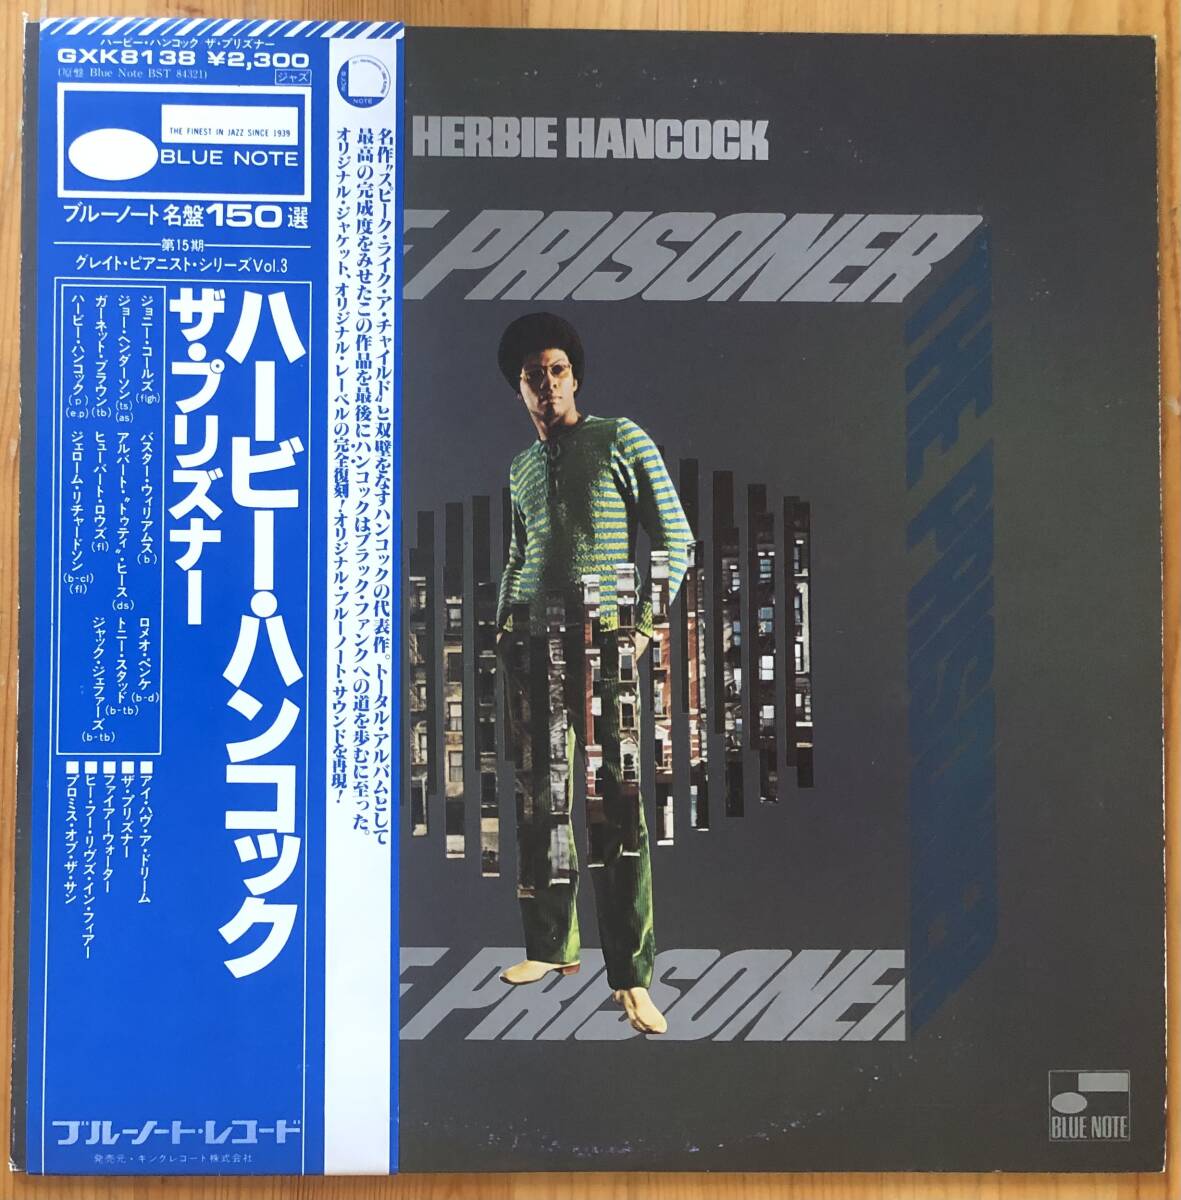 見本盤 HERBIE HANCOCK ハービー・ハンコック / THE PRISONER 帯付き LP レコード Blue Note キング盤 GXK8138_画像1